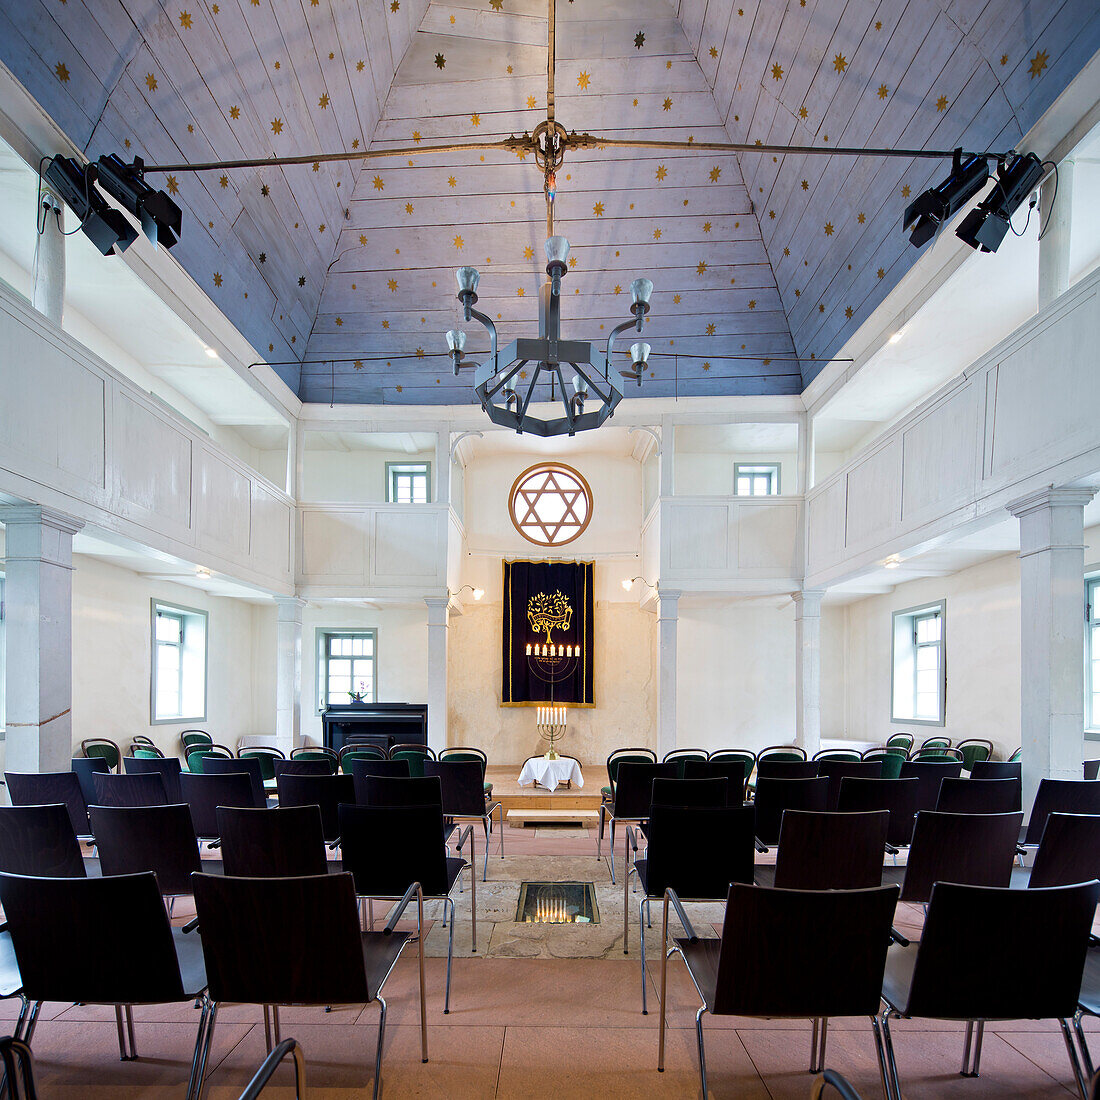 Innenraum der Synagoge Vöhl mit dem siebenarmigen Leuchter, Vöhl, Nordhessen, Hessen, Deutschland, Europa